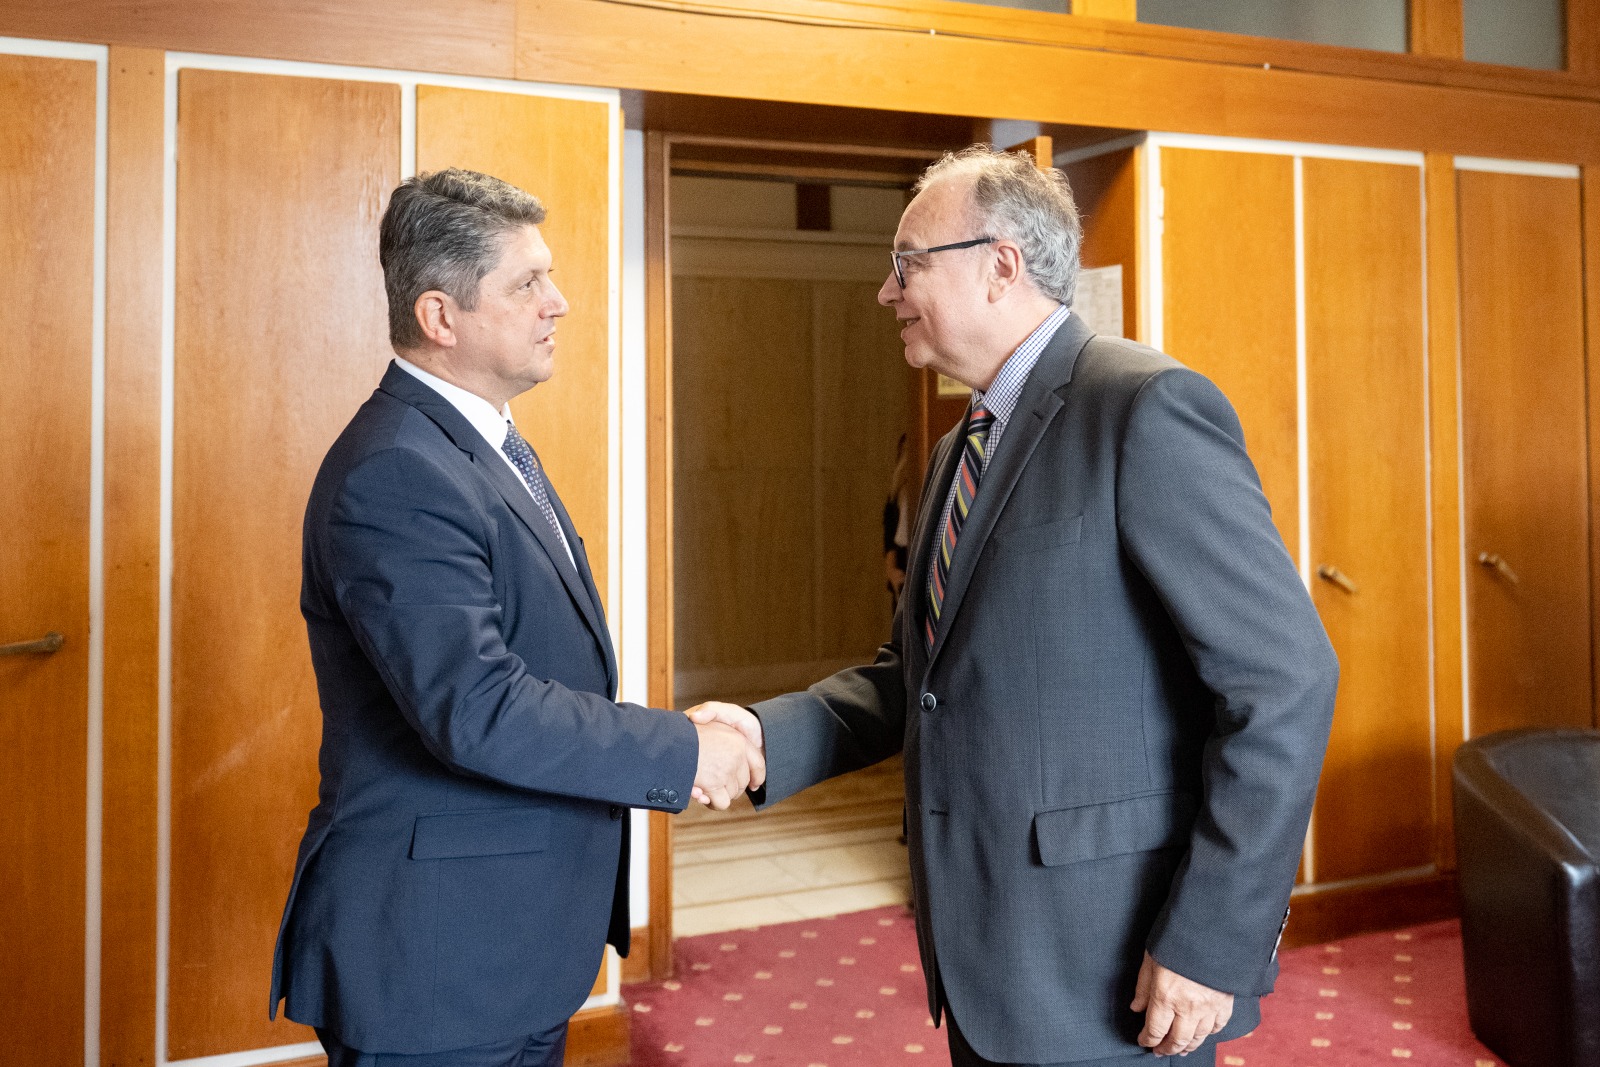 Senatorul Titus Corlățean, președintele Comisiei pentru politică externă a Senatului României, întâlnire cu ambasadorul Lituaniei la București, Artūras Žurauskas, la începerea mandatului diplomatic în România.